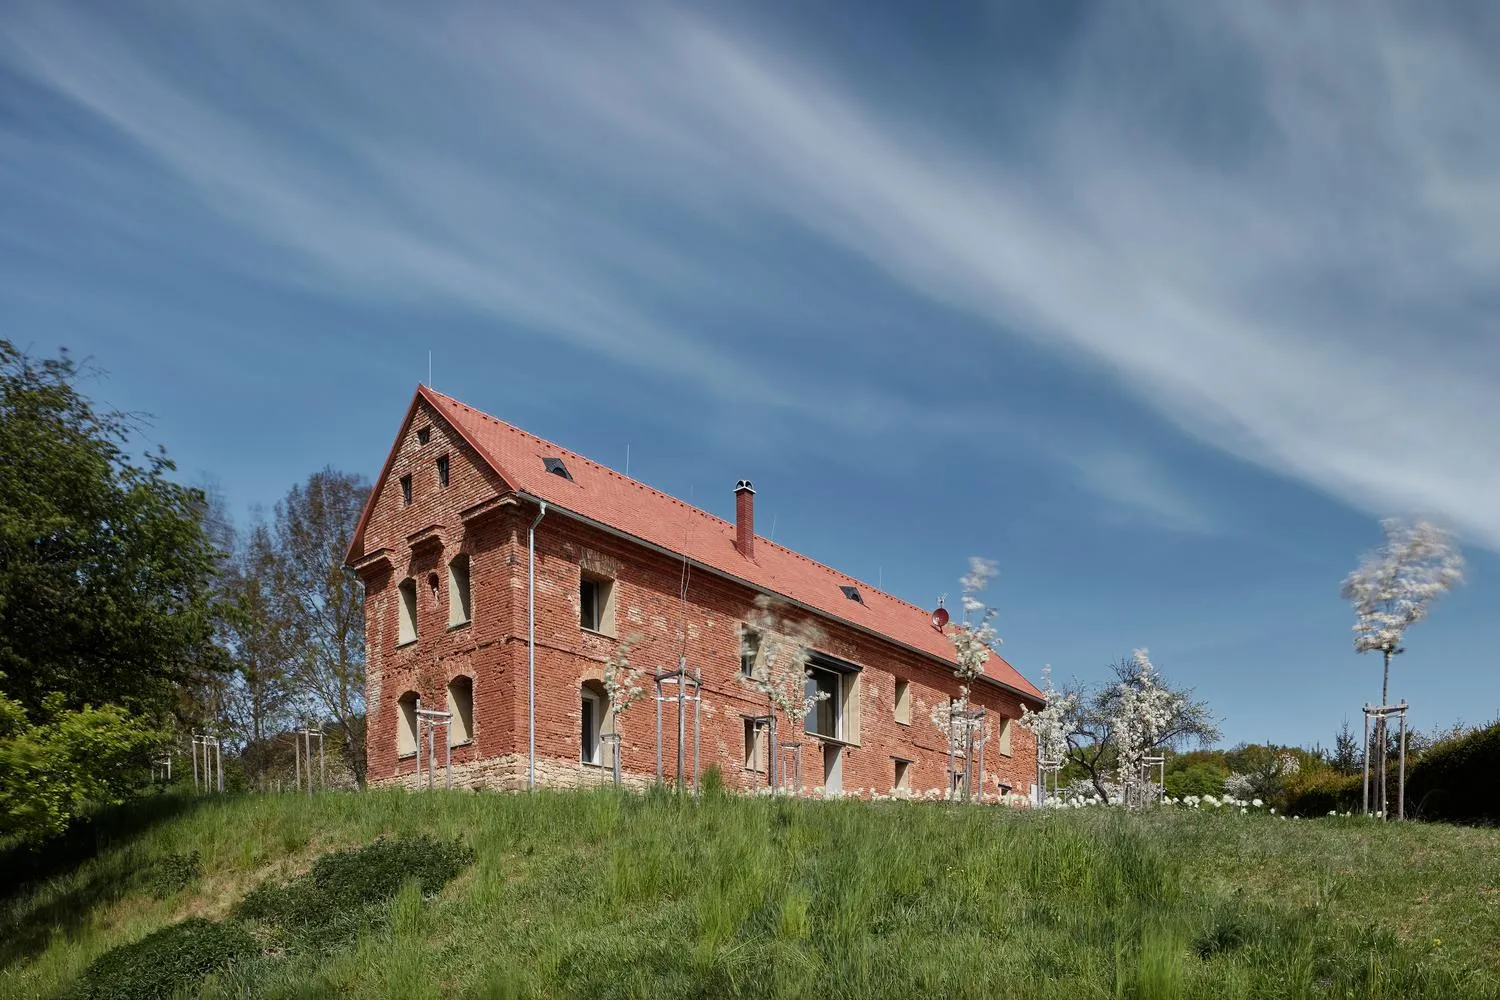 Дім всередині руїн: грандіозна реконструкція занедбаної садиби у Чехії 